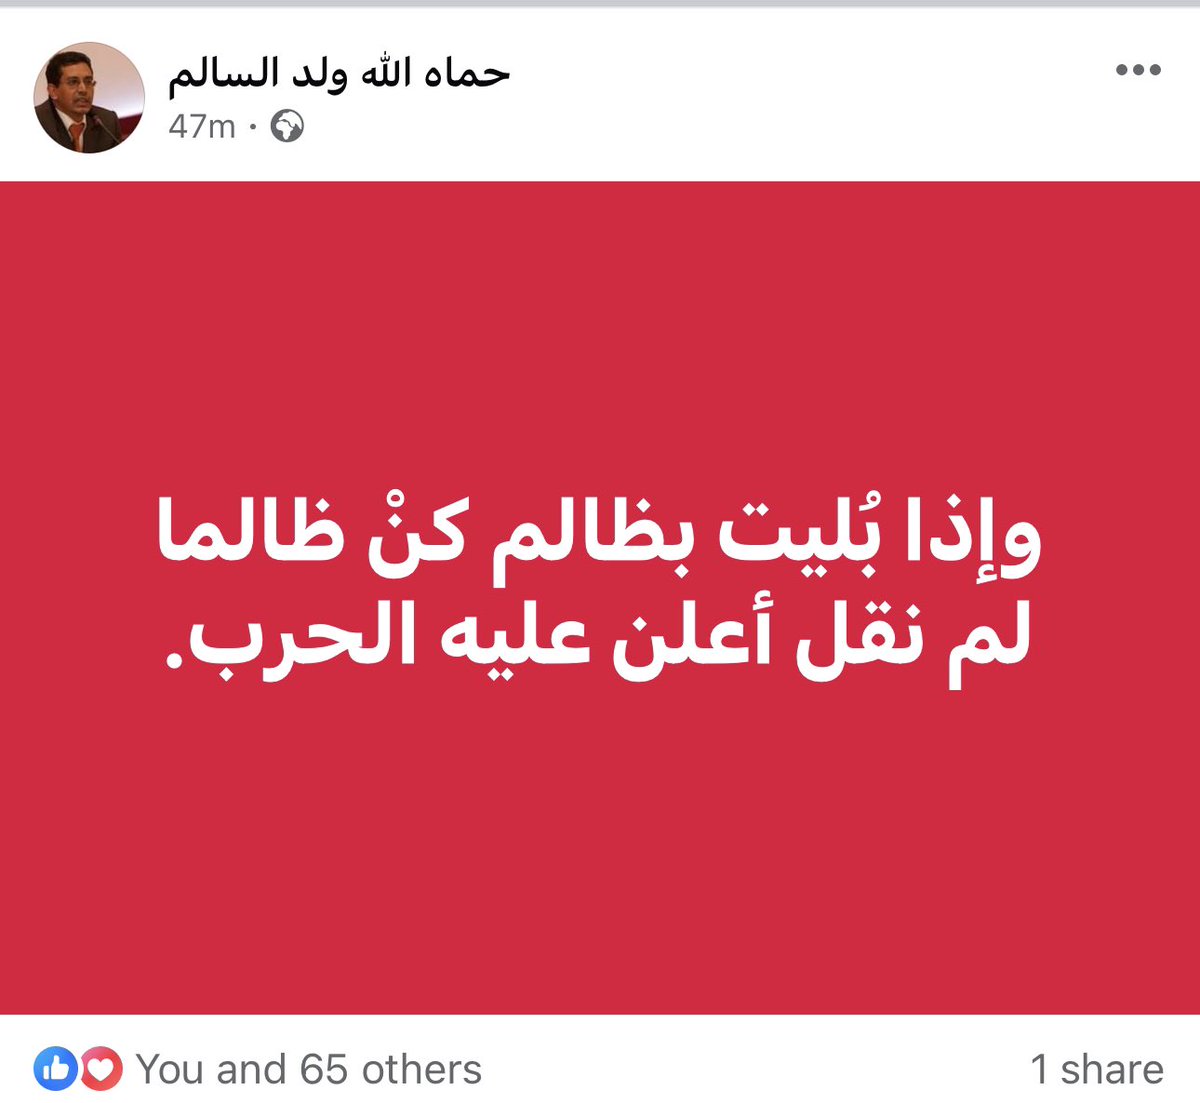 الدكتور حماه الله و لد السالم 🇲🇷
قبل قليل على موقع فيسبوك 

#ازواد #موريتانيا